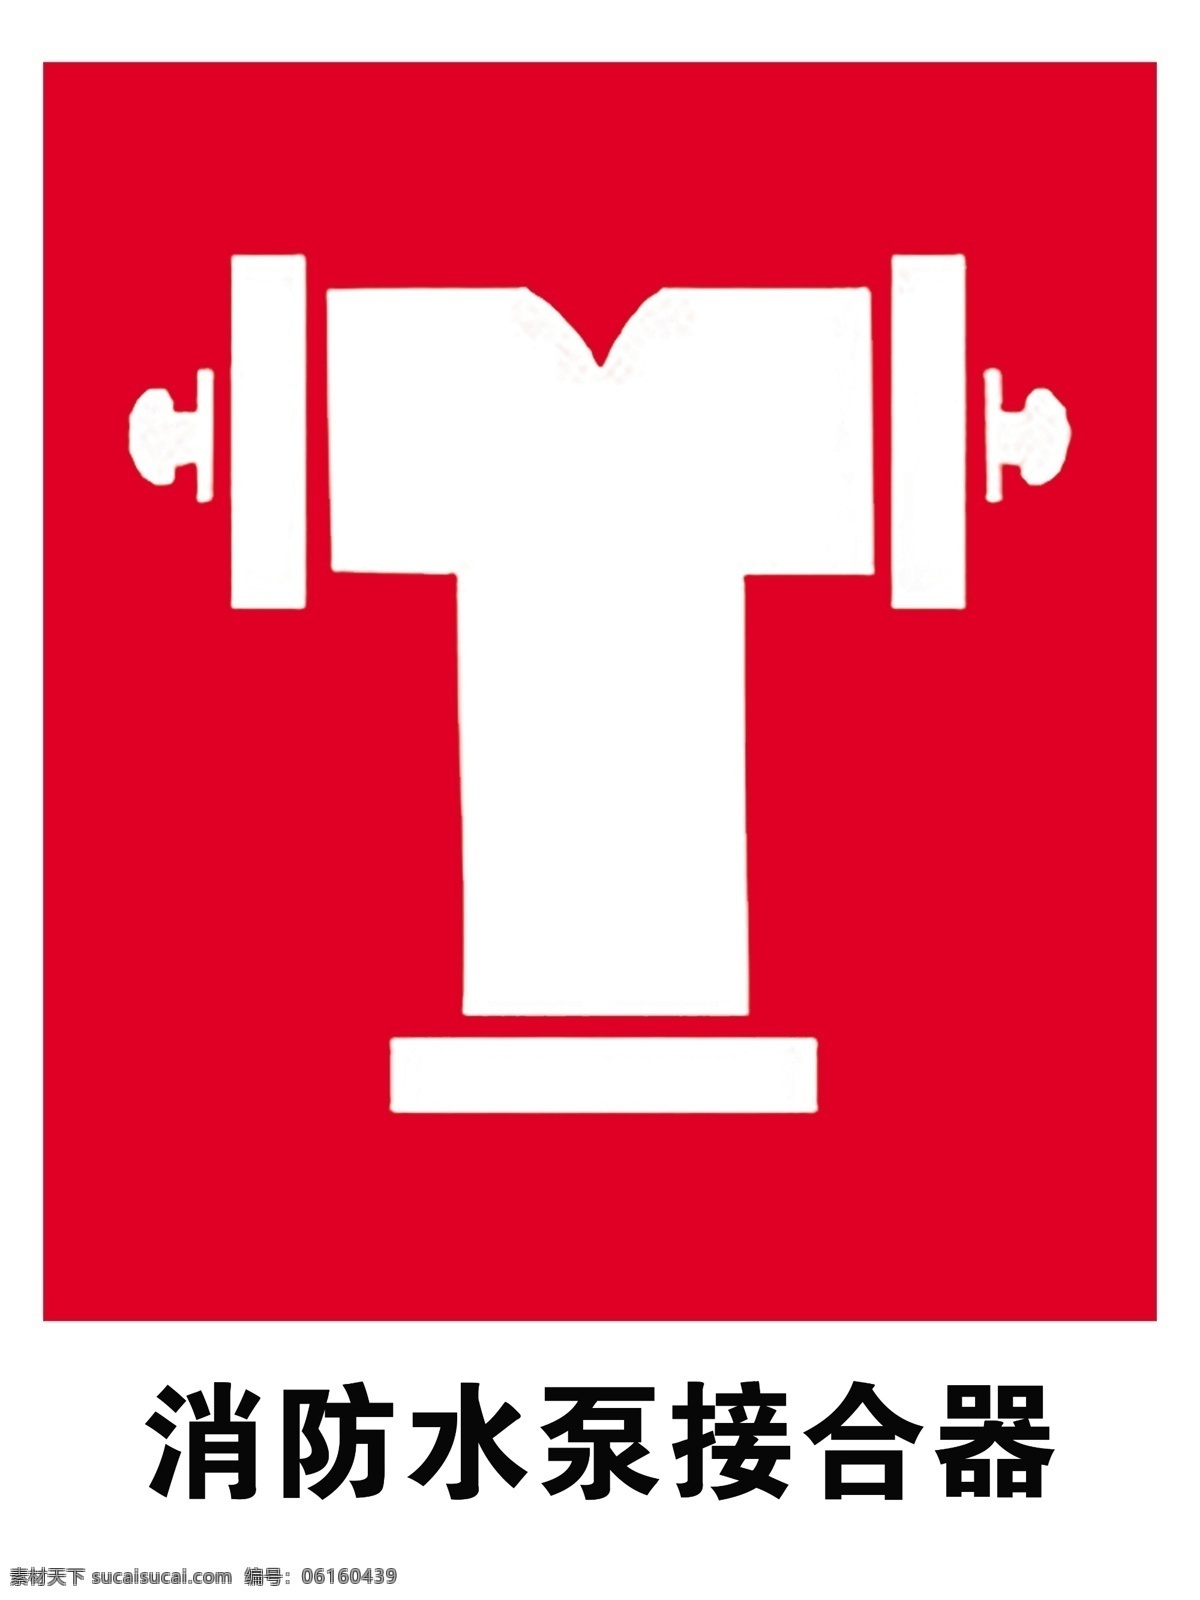 消防 水泵 接合器 消防水泵 安全标识 安全 标识 指示牌 标志 安全标志展板 标志图标 公共标识标志